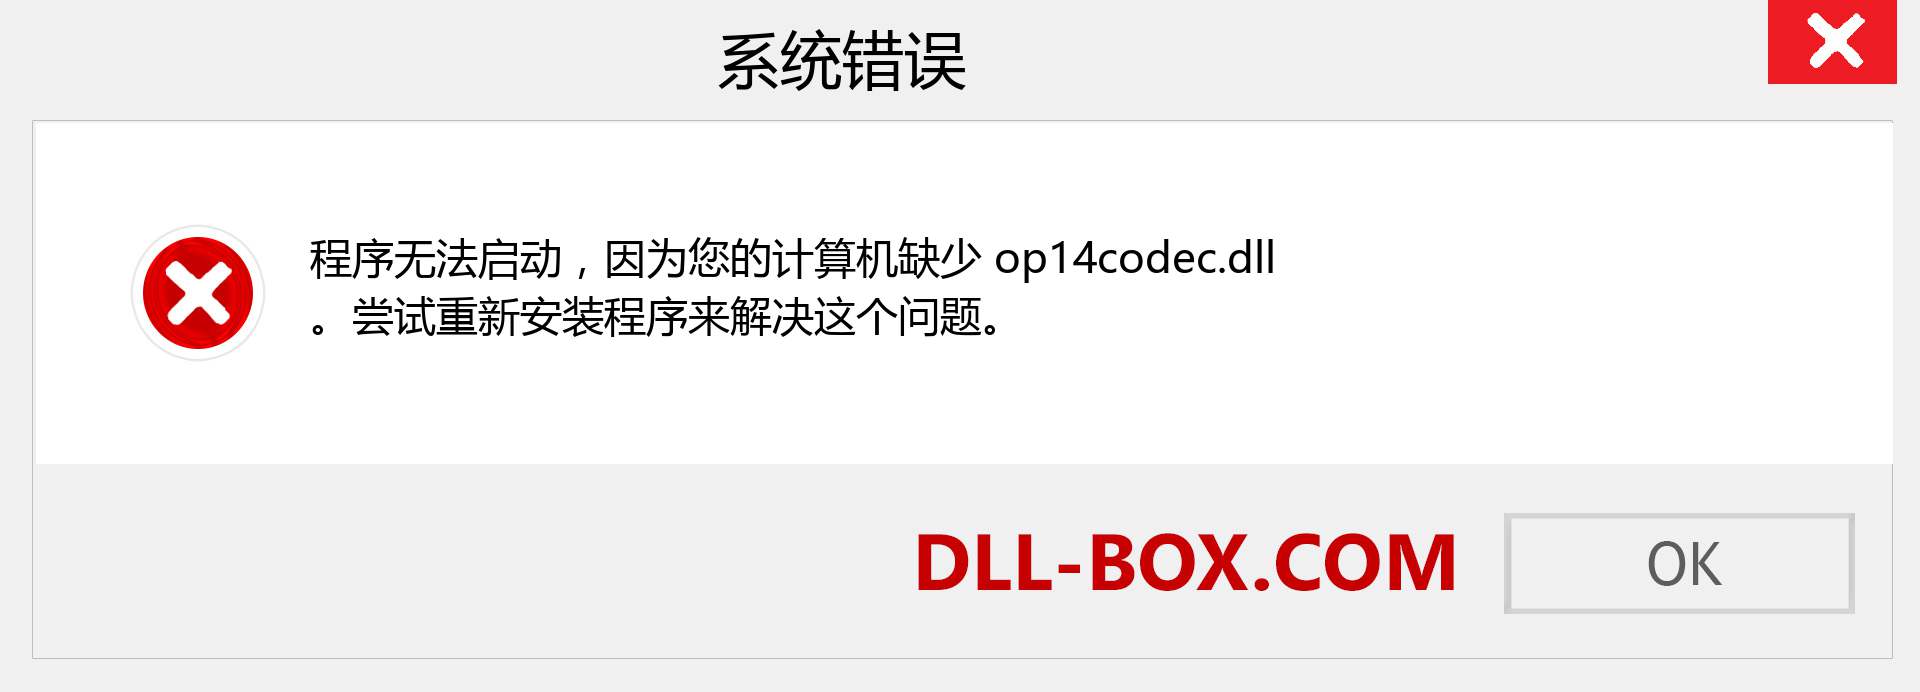 op14codec.dll 文件丢失？。 适用于 Windows 7、8、10 的下载 - 修复 Windows、照片、图像上的 op14codec dll 丢失错误